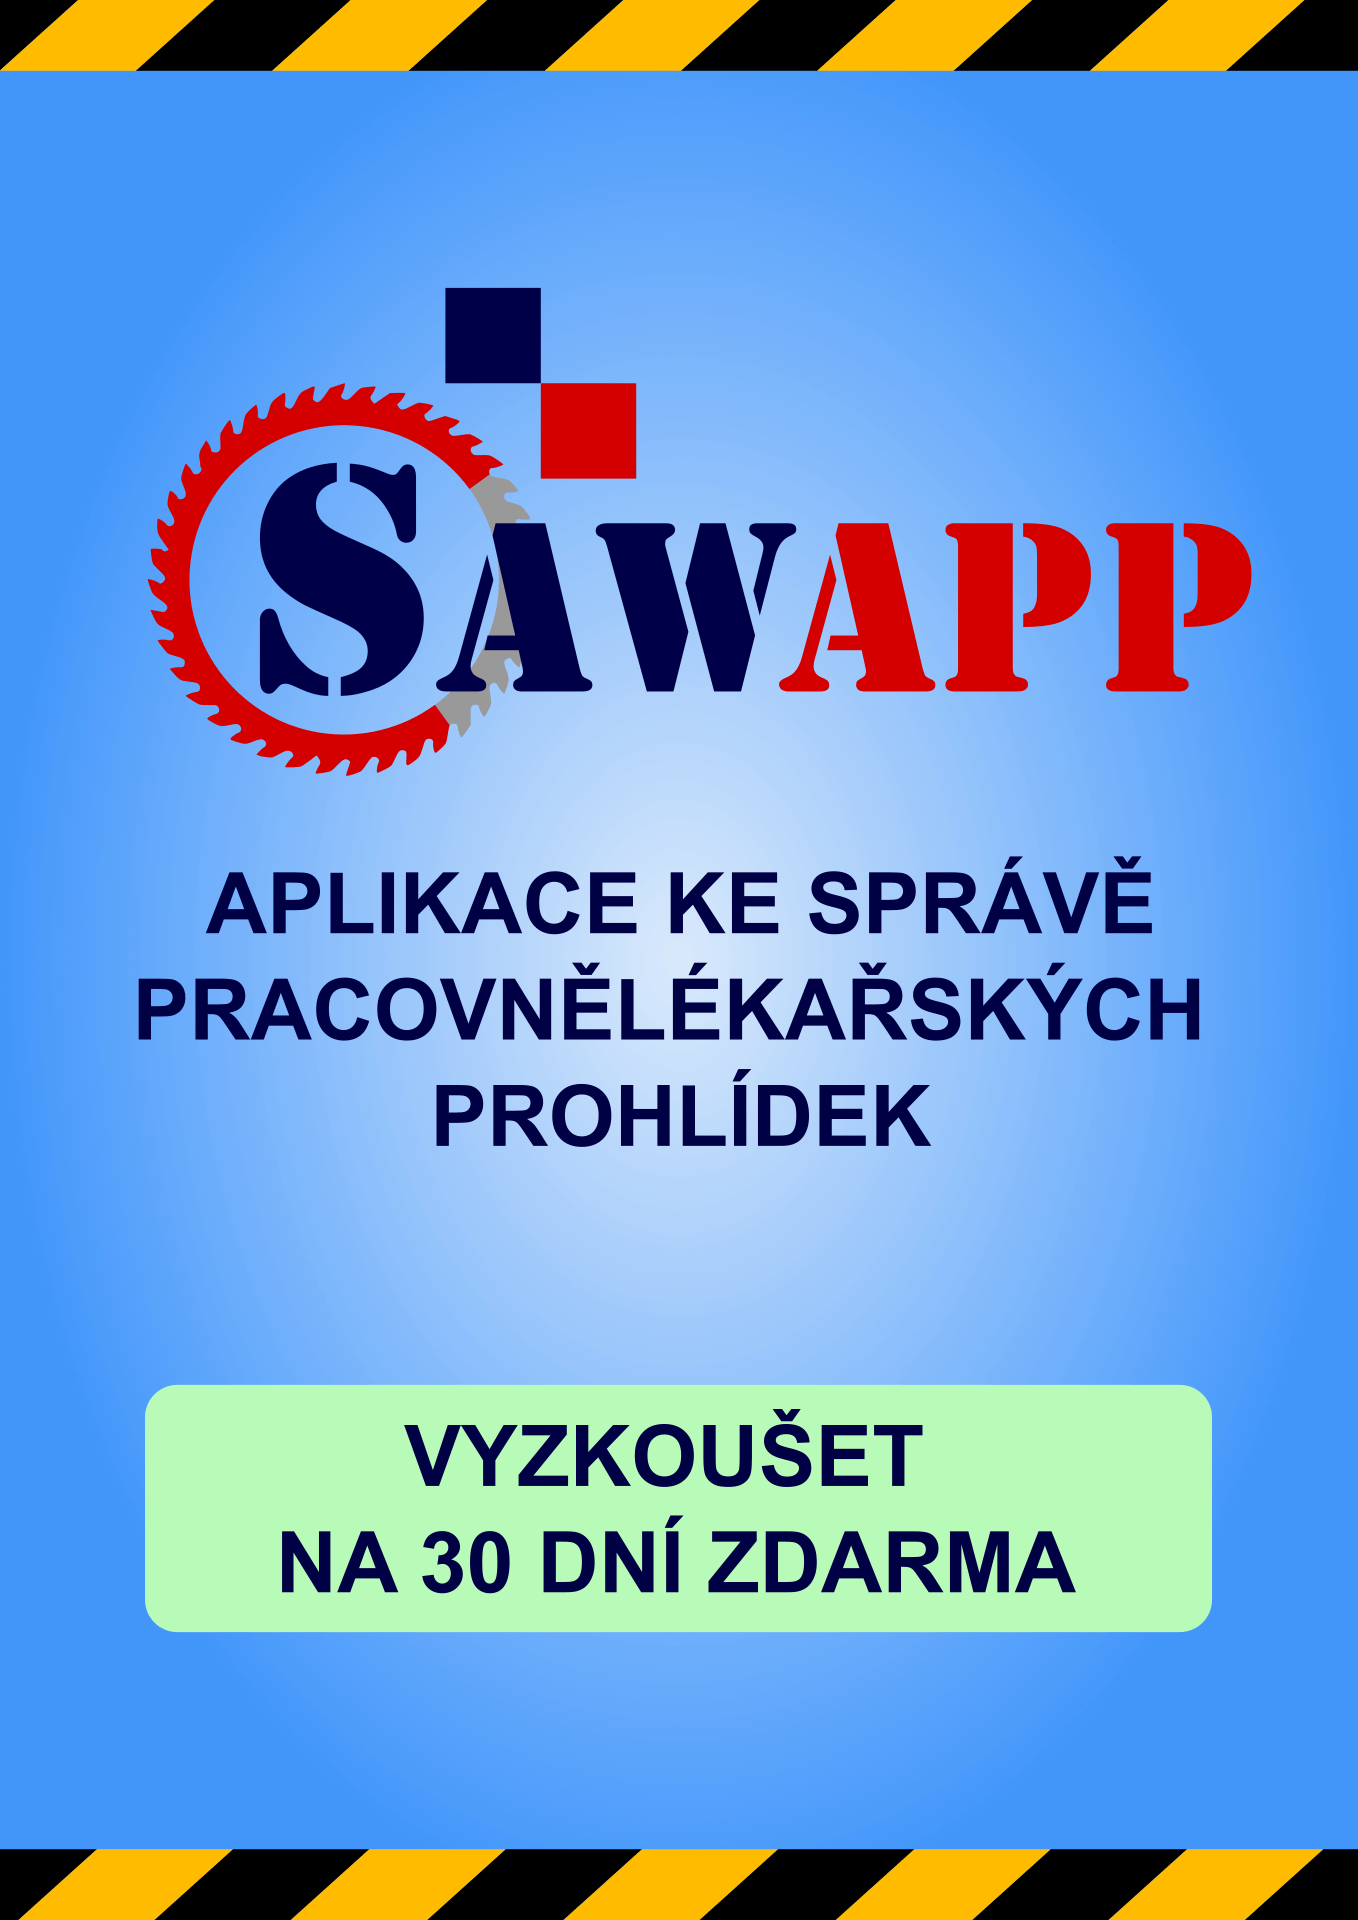 SAWAPP - Aplikace ke správě pracovnělékařských prohlídek